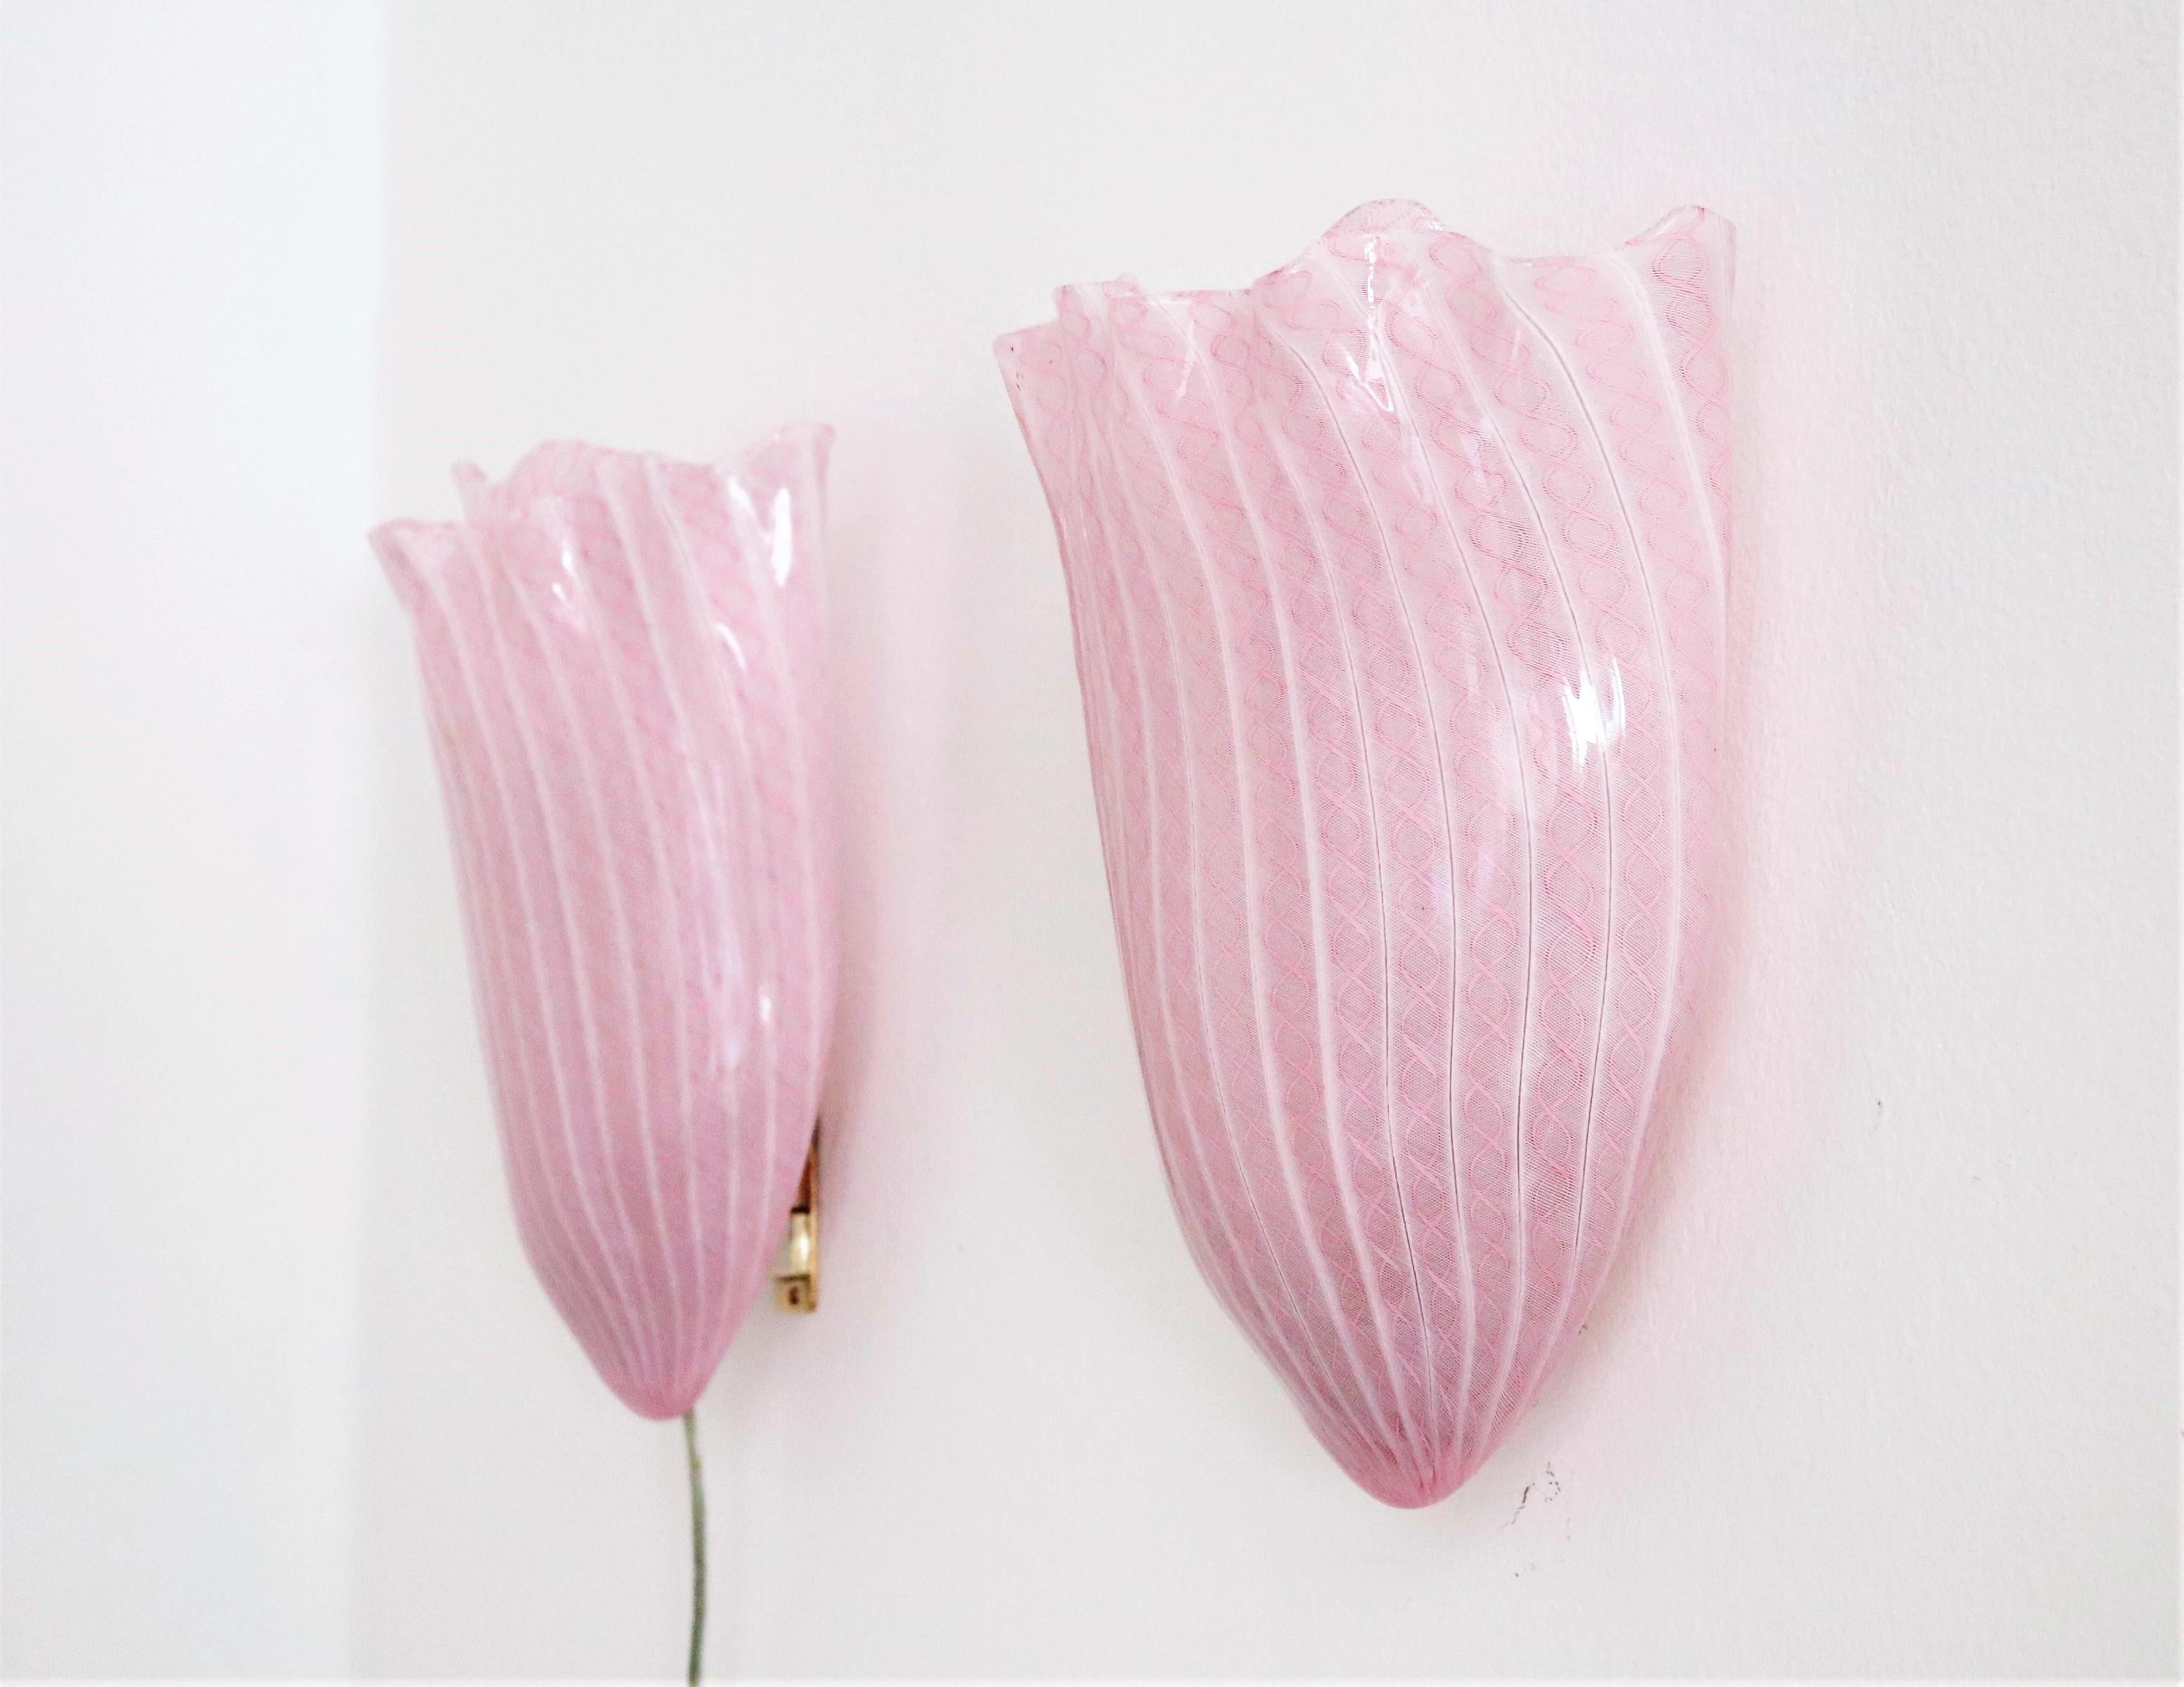 Wunderschönes und seltenes Paar Wandleuchter, handgefertigt von Murano Glasmeister Fulvio Bianconi für Venini in den 1950er Jahren.
Beide Wandleuchten sind aus rosa und weiß gewirbeltem Murano-Kunstglas in Zanfirico